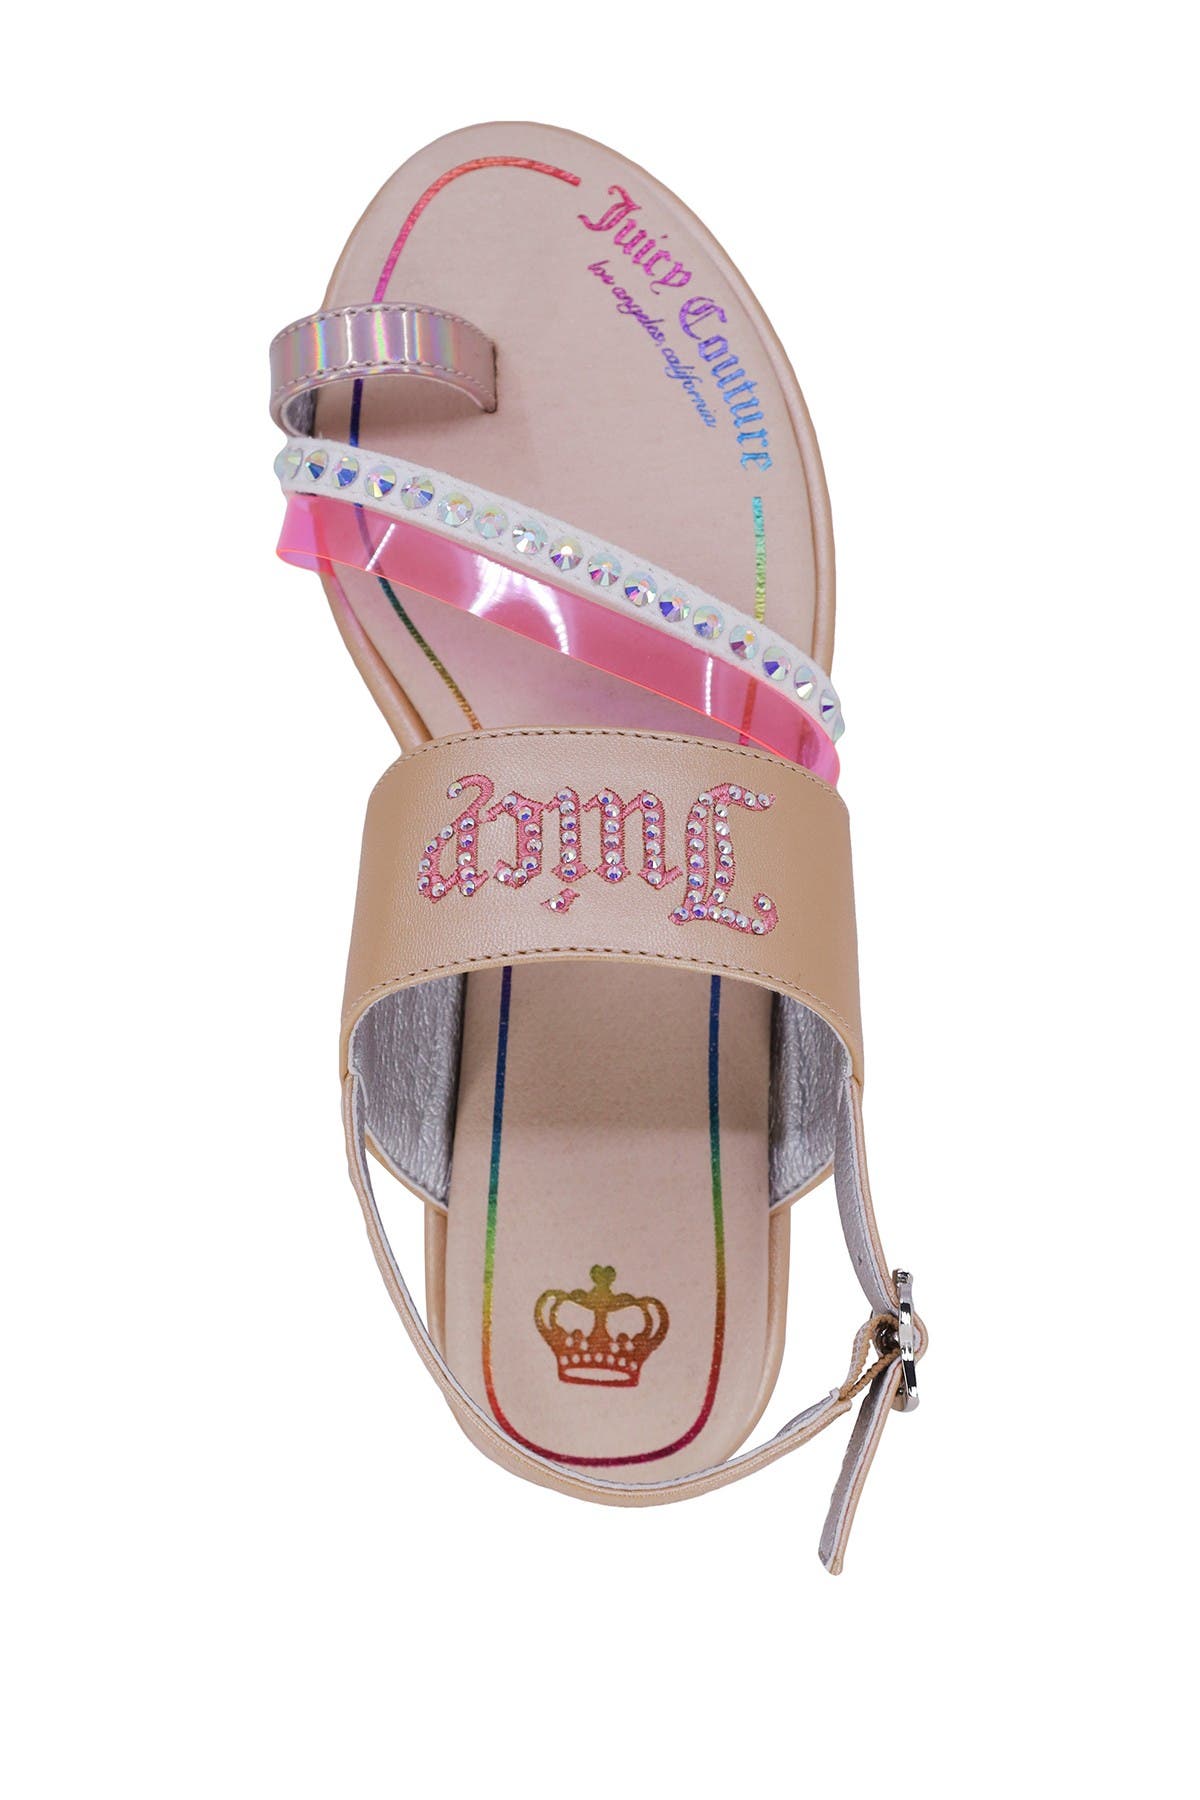 Juicy Couture Kids' Concord Loop Toe Sandal In Beige/khaki